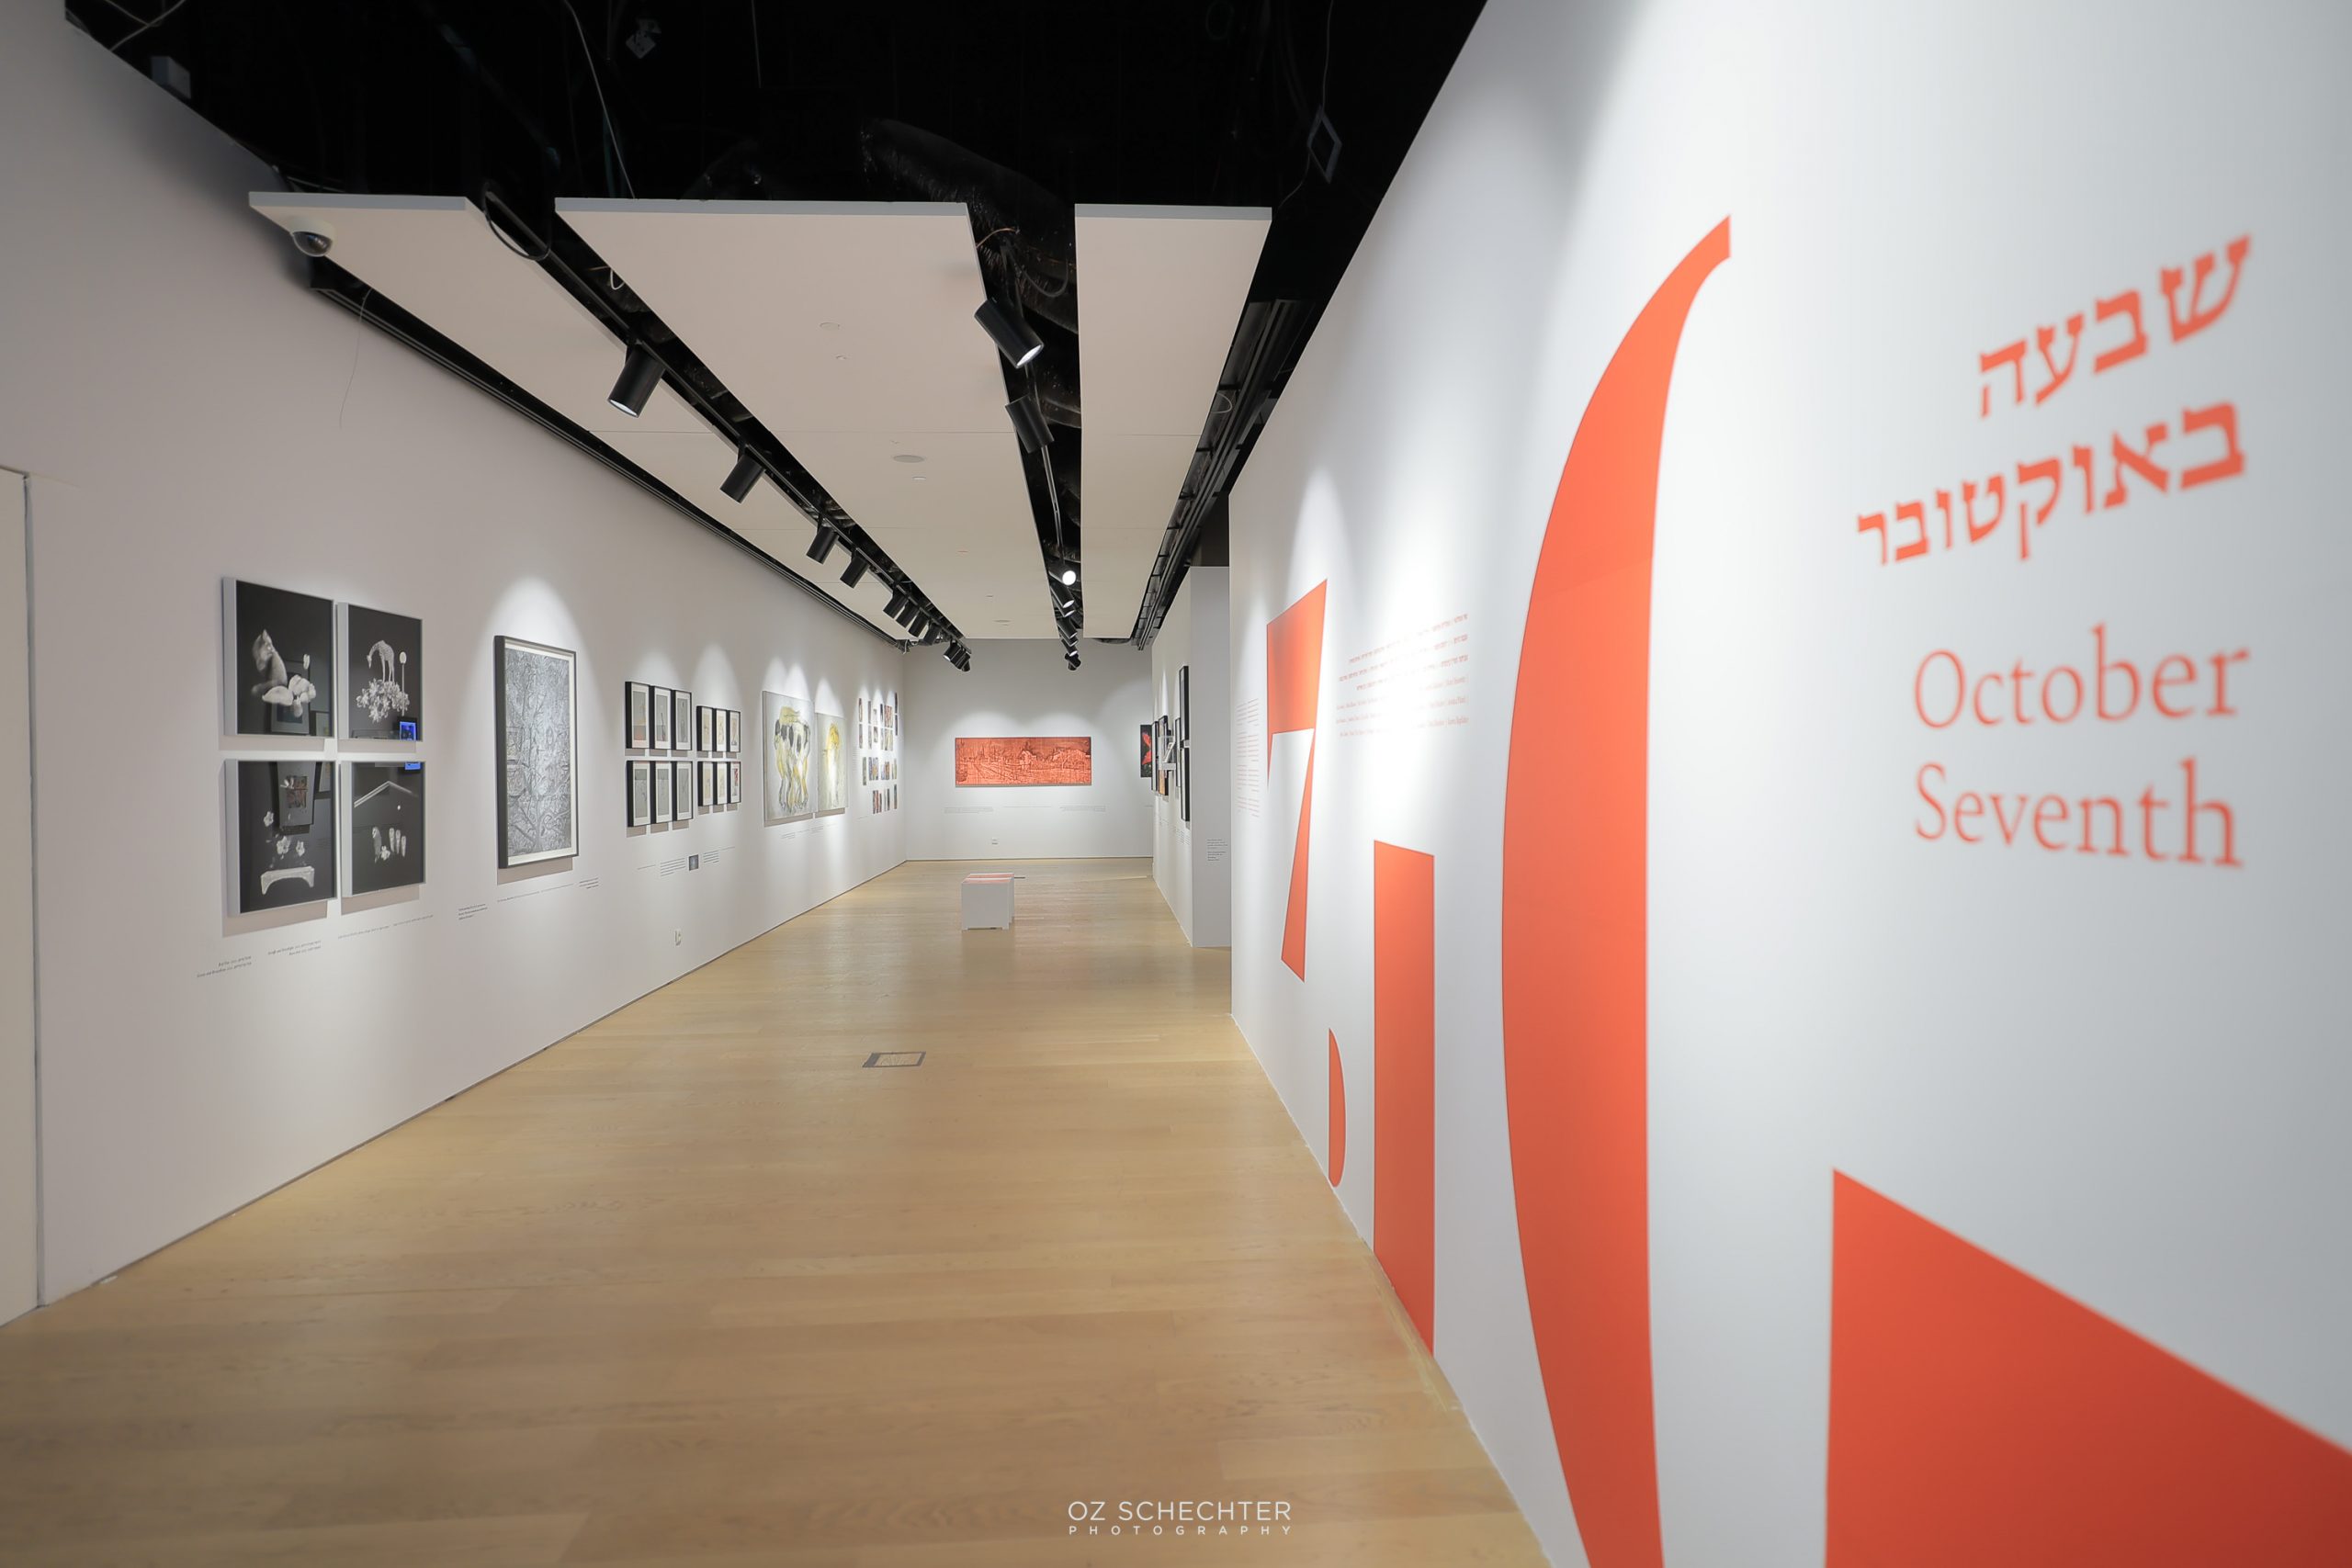 תערוכה, שבעה באוקטובר. אנו - מוזיאון העם היהודי. צילום: עוז שכטר